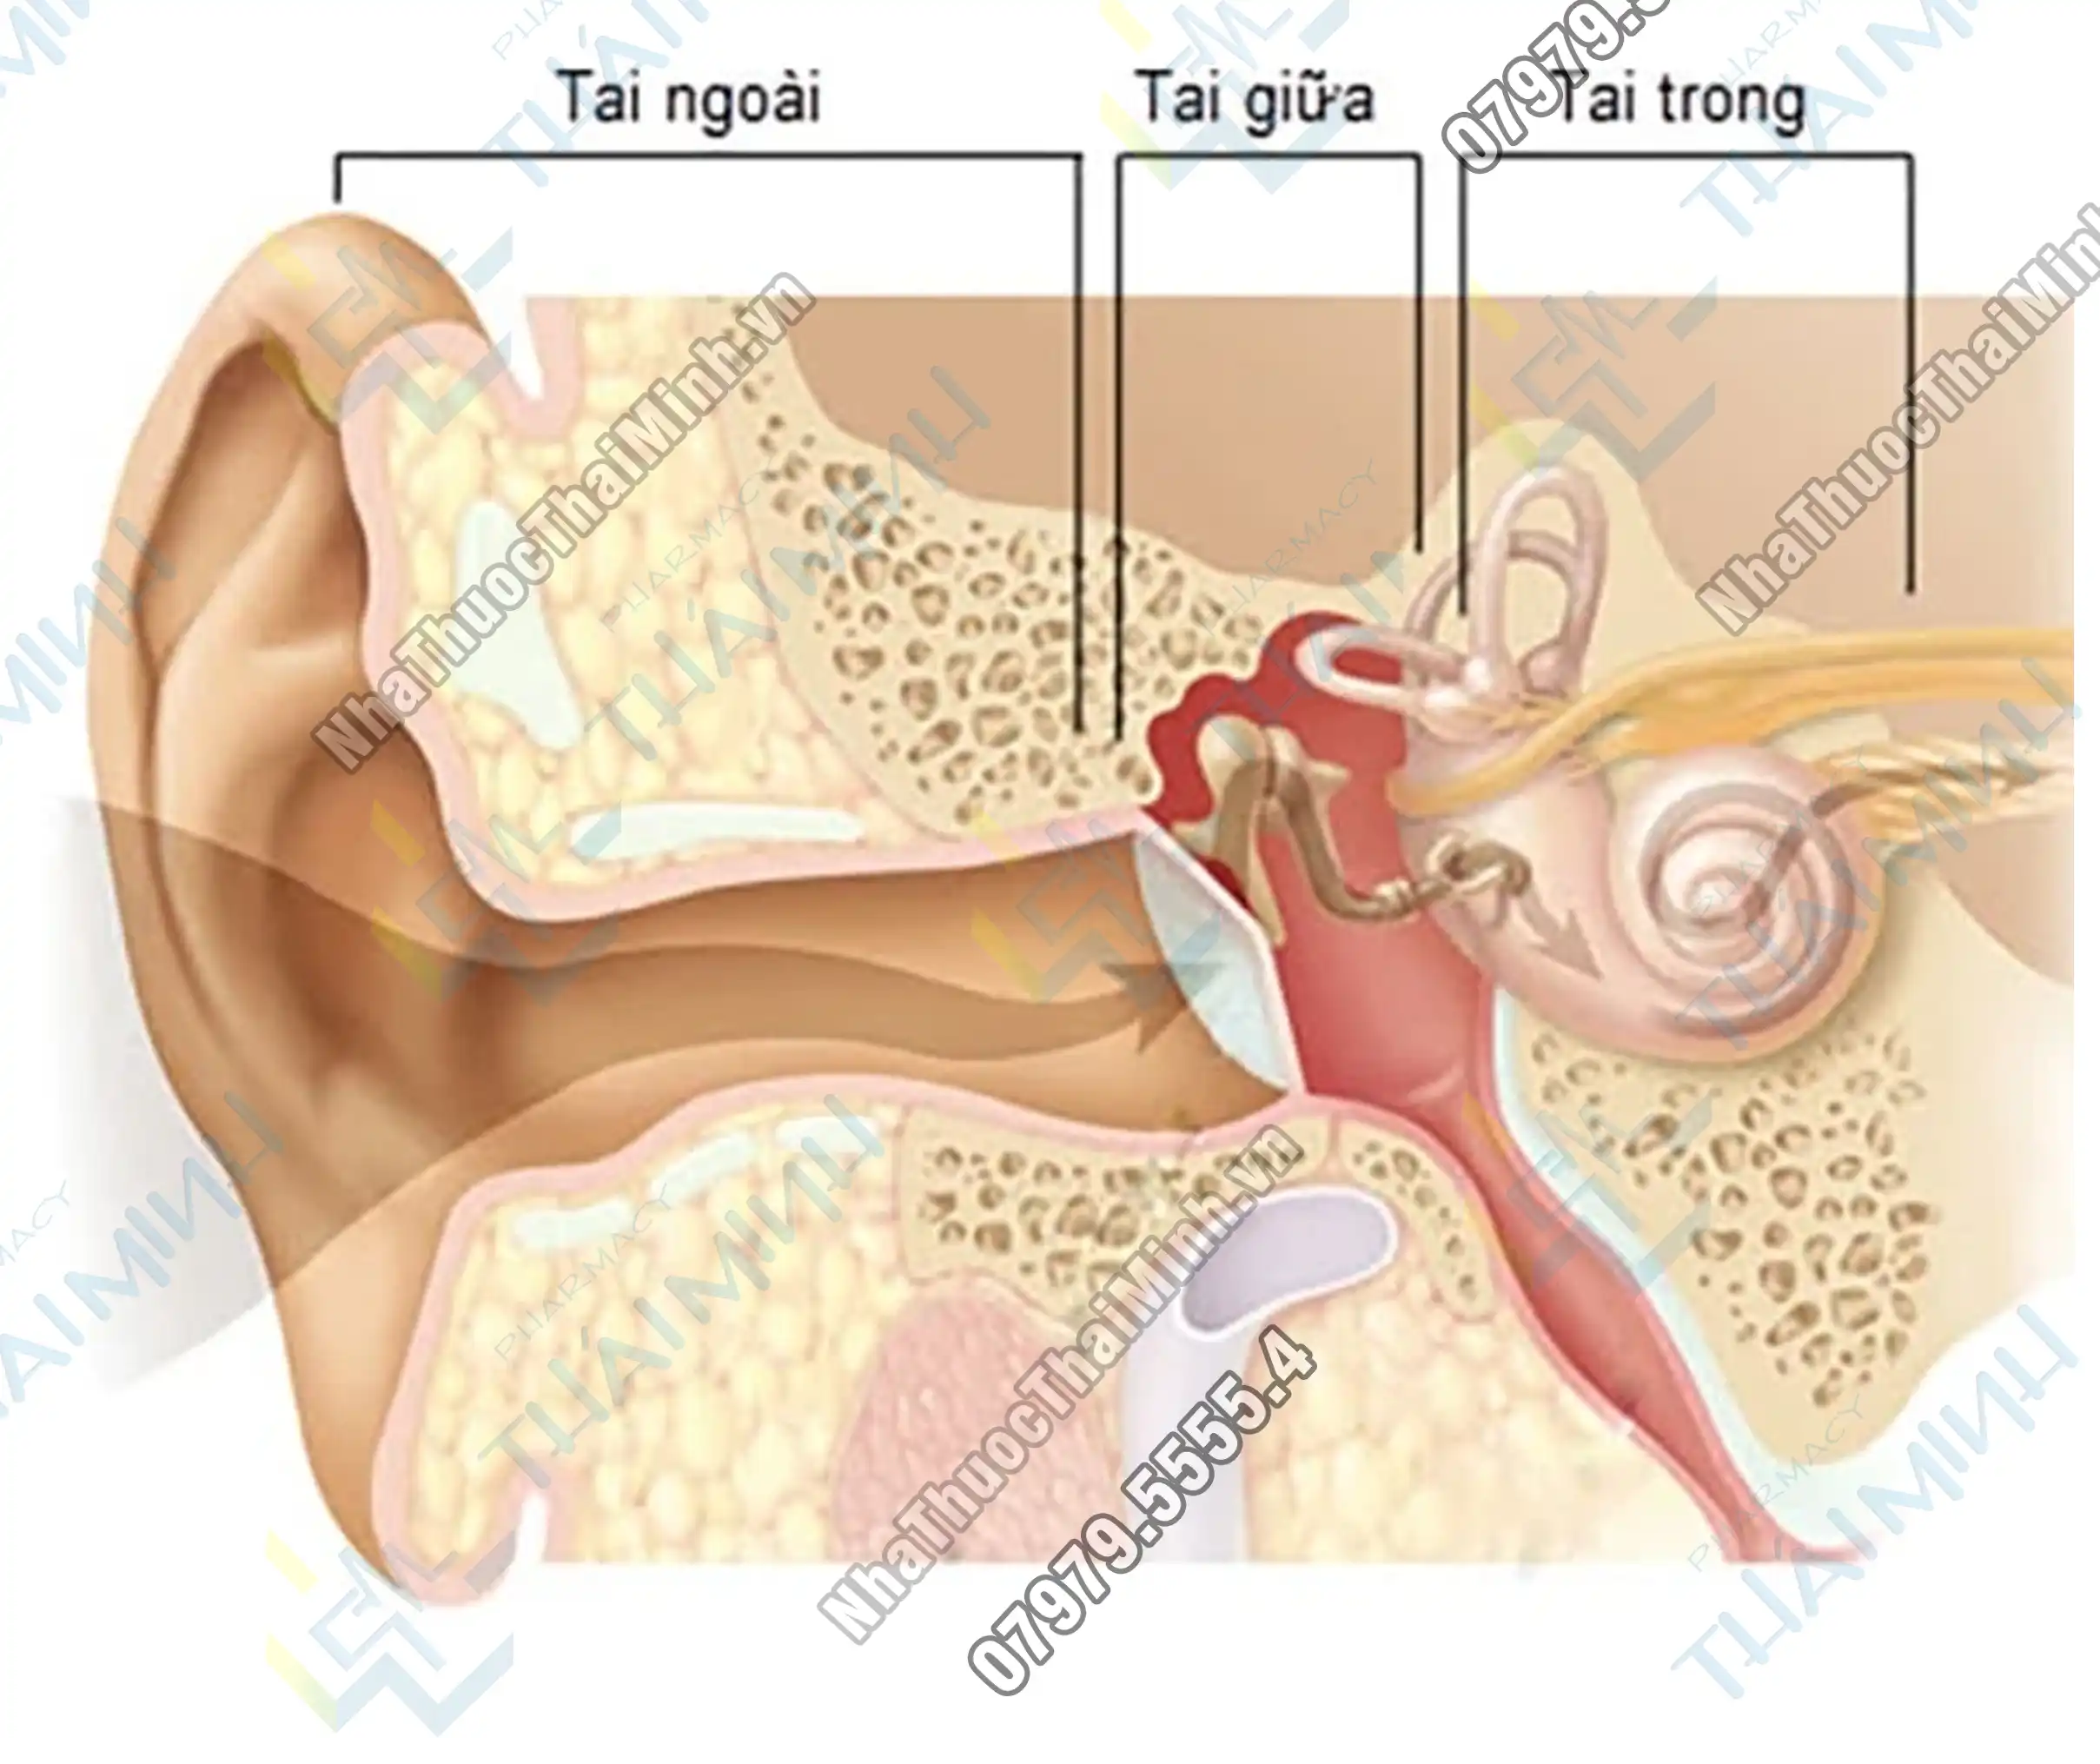 Dạng nhẹ của viêm tai trong là kết quả của nhiễm trùng vi khuẩn trong tai giữa (viêm tai giữa mạn tính). Nếu không được điều trị, viêm tai giữa mạn tính có thể tiến triển và lan sang tai trong, gây ra viêm tai trong.